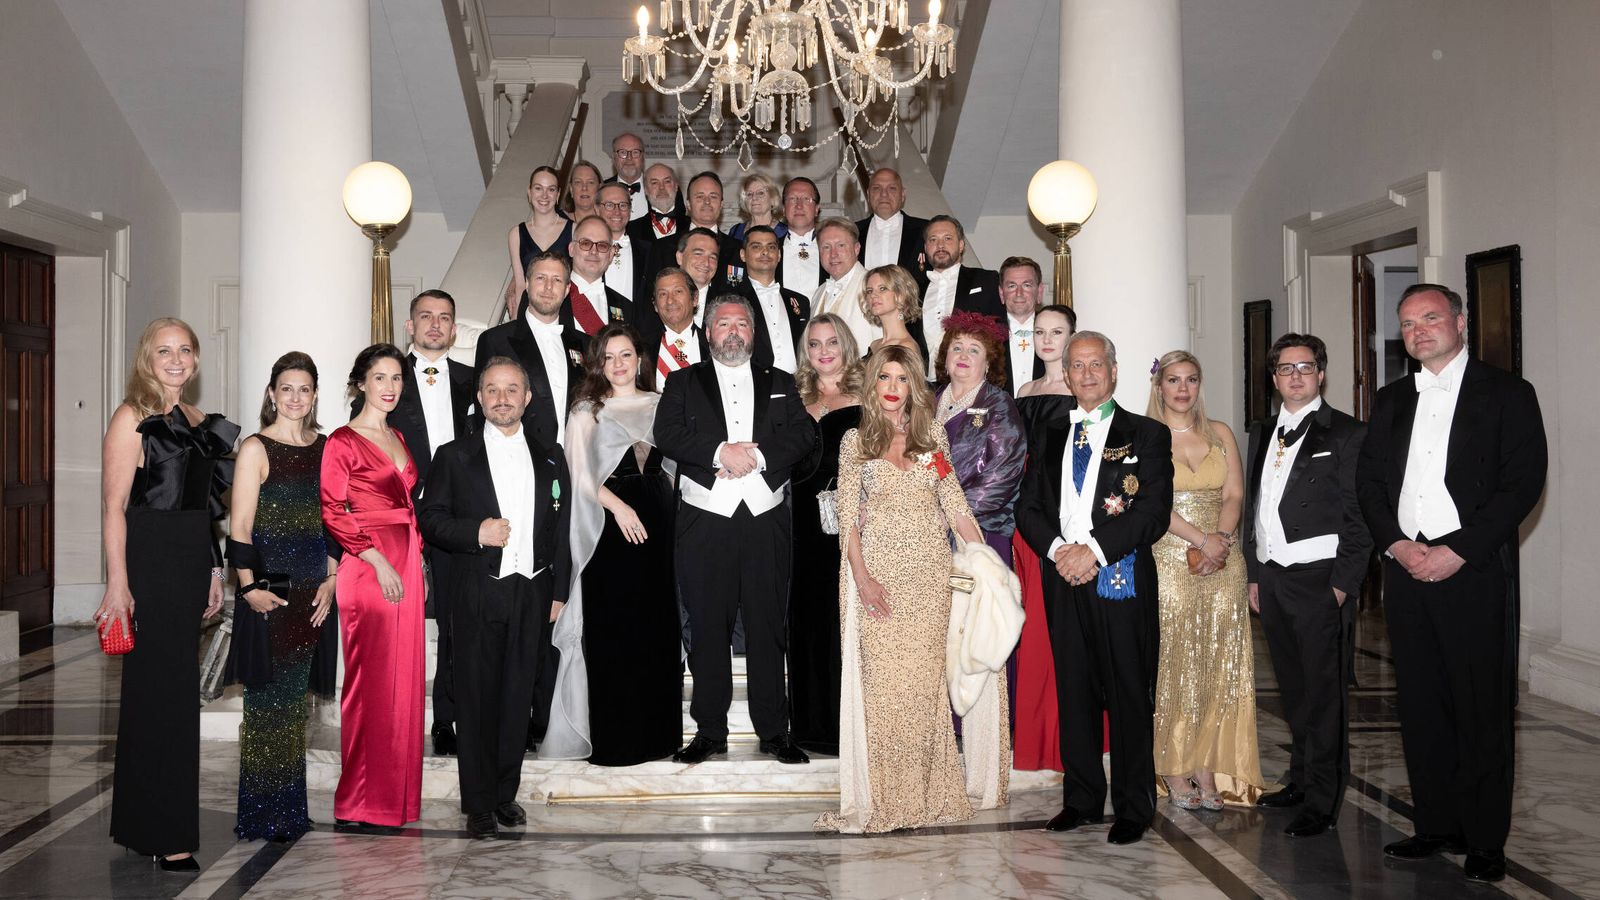 Los grandes duques de Rusia, en primera fila, junto a sus invitados. (Cortesía)